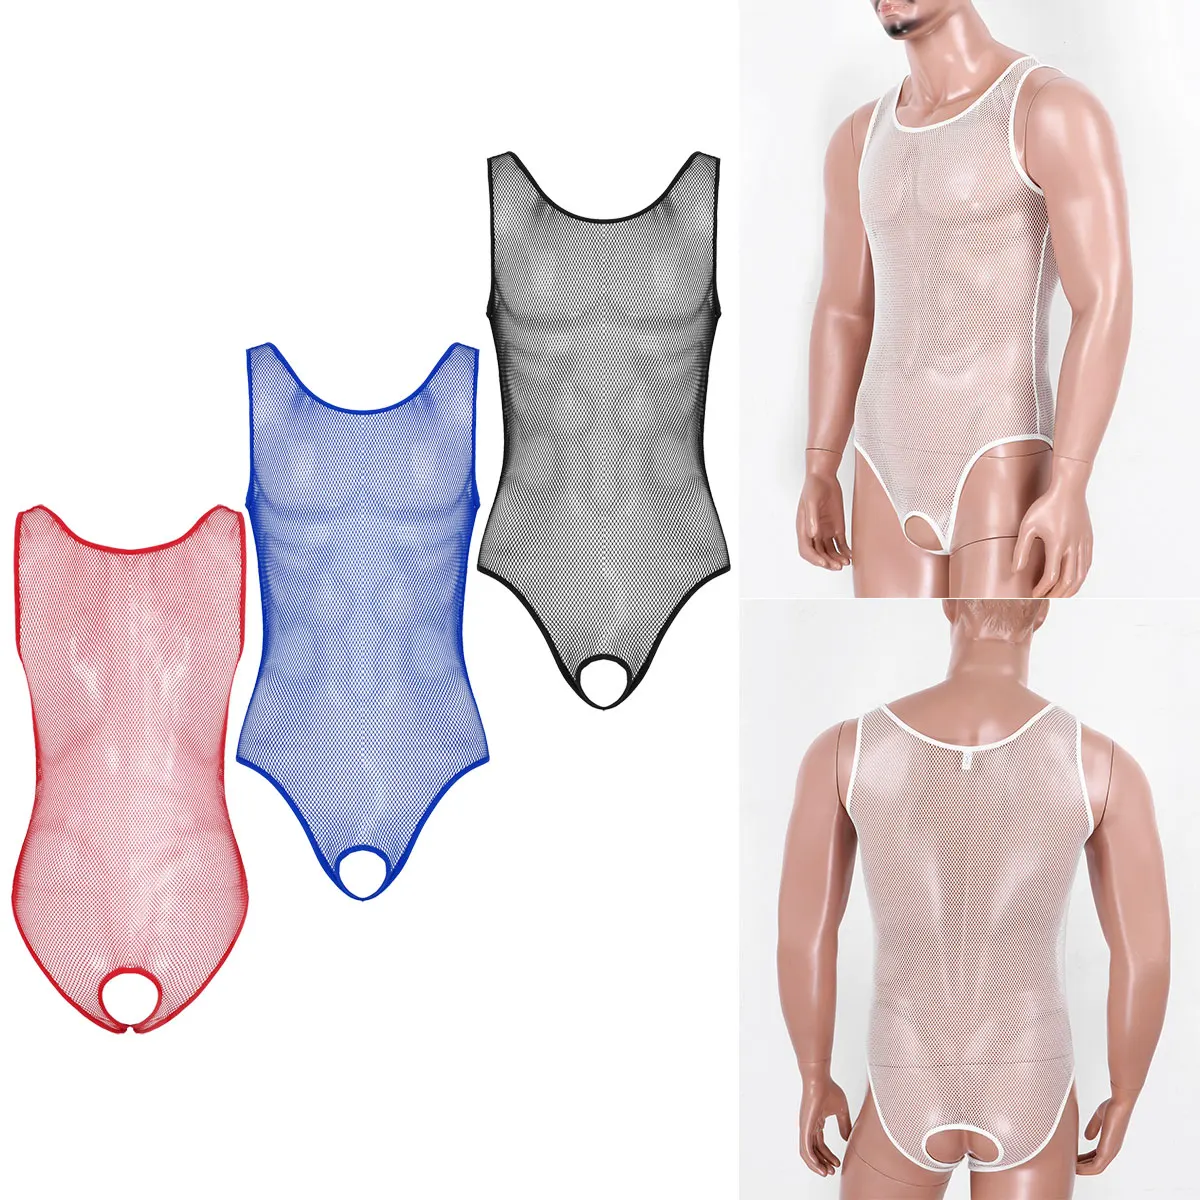 סקסי Mens אחד-חתיכת בגד ים Monokini חלול החוצה רשת הלבשה תחתונה סקופ צוואר שרוולים פתח במפשעה בגד גוף בגד Nightwear - 1